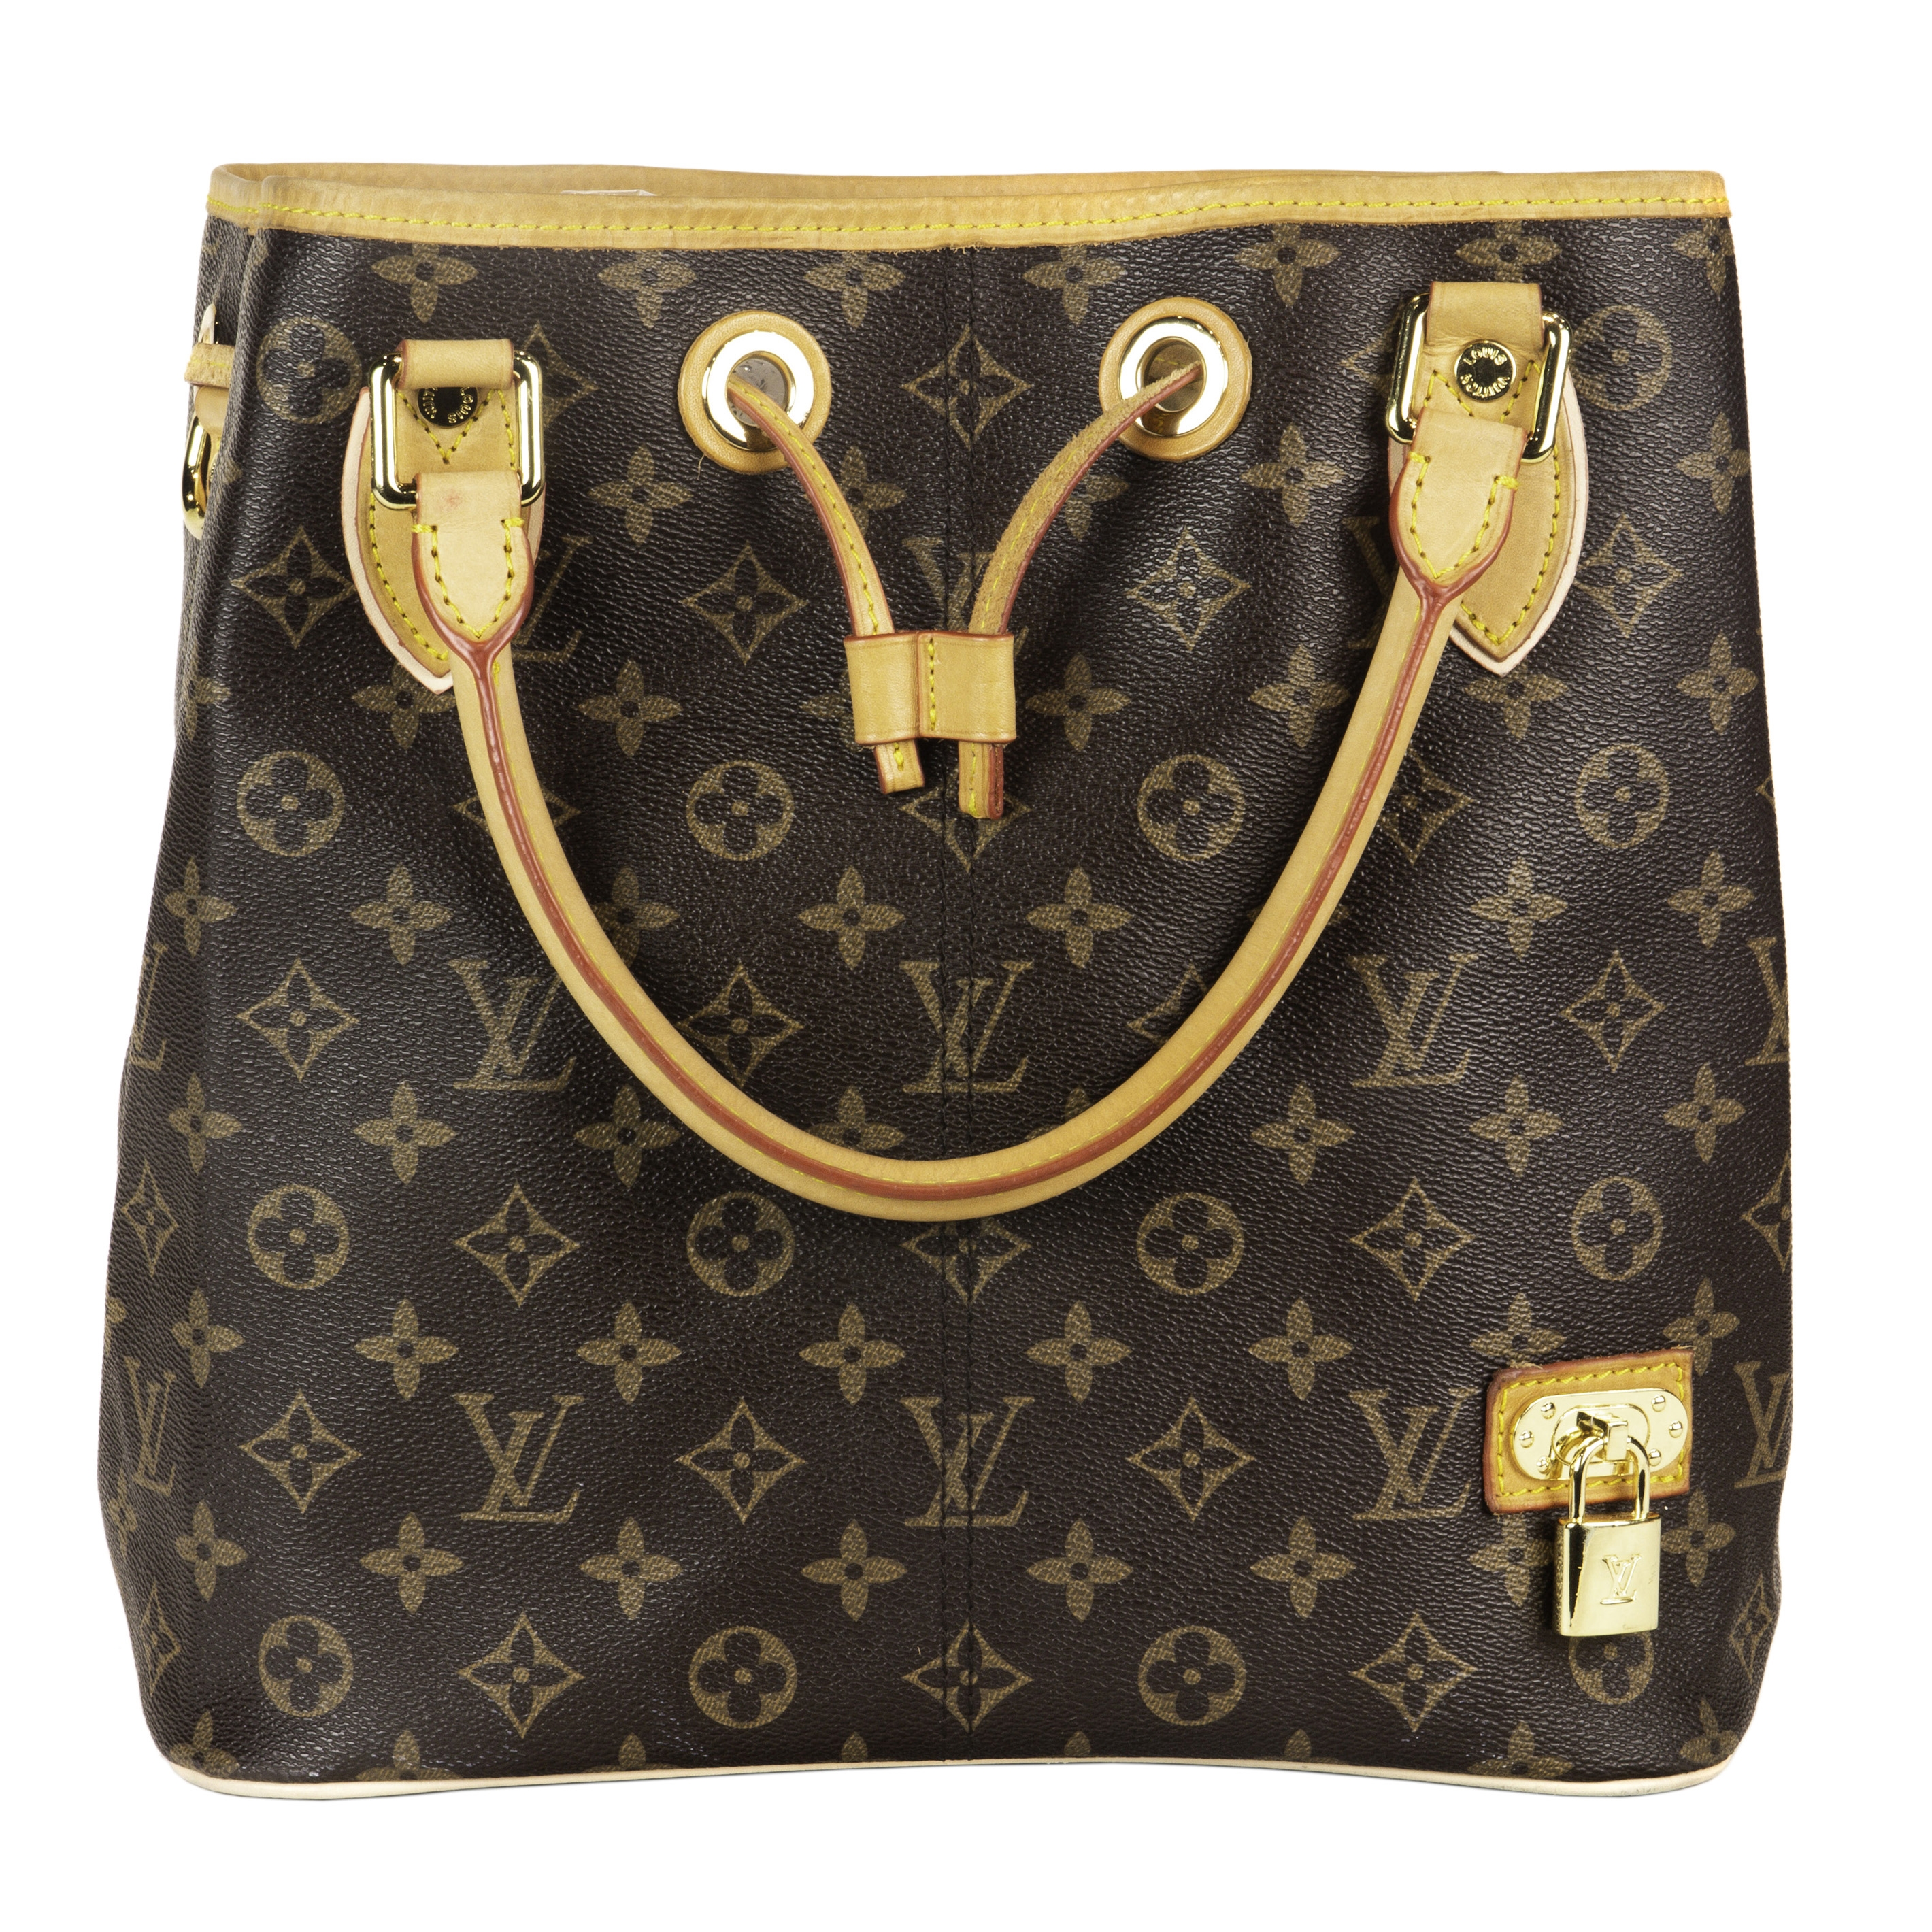 Sold at Auction: Louis Vuitton, Louis Vuitton Vintage Bucket Bag